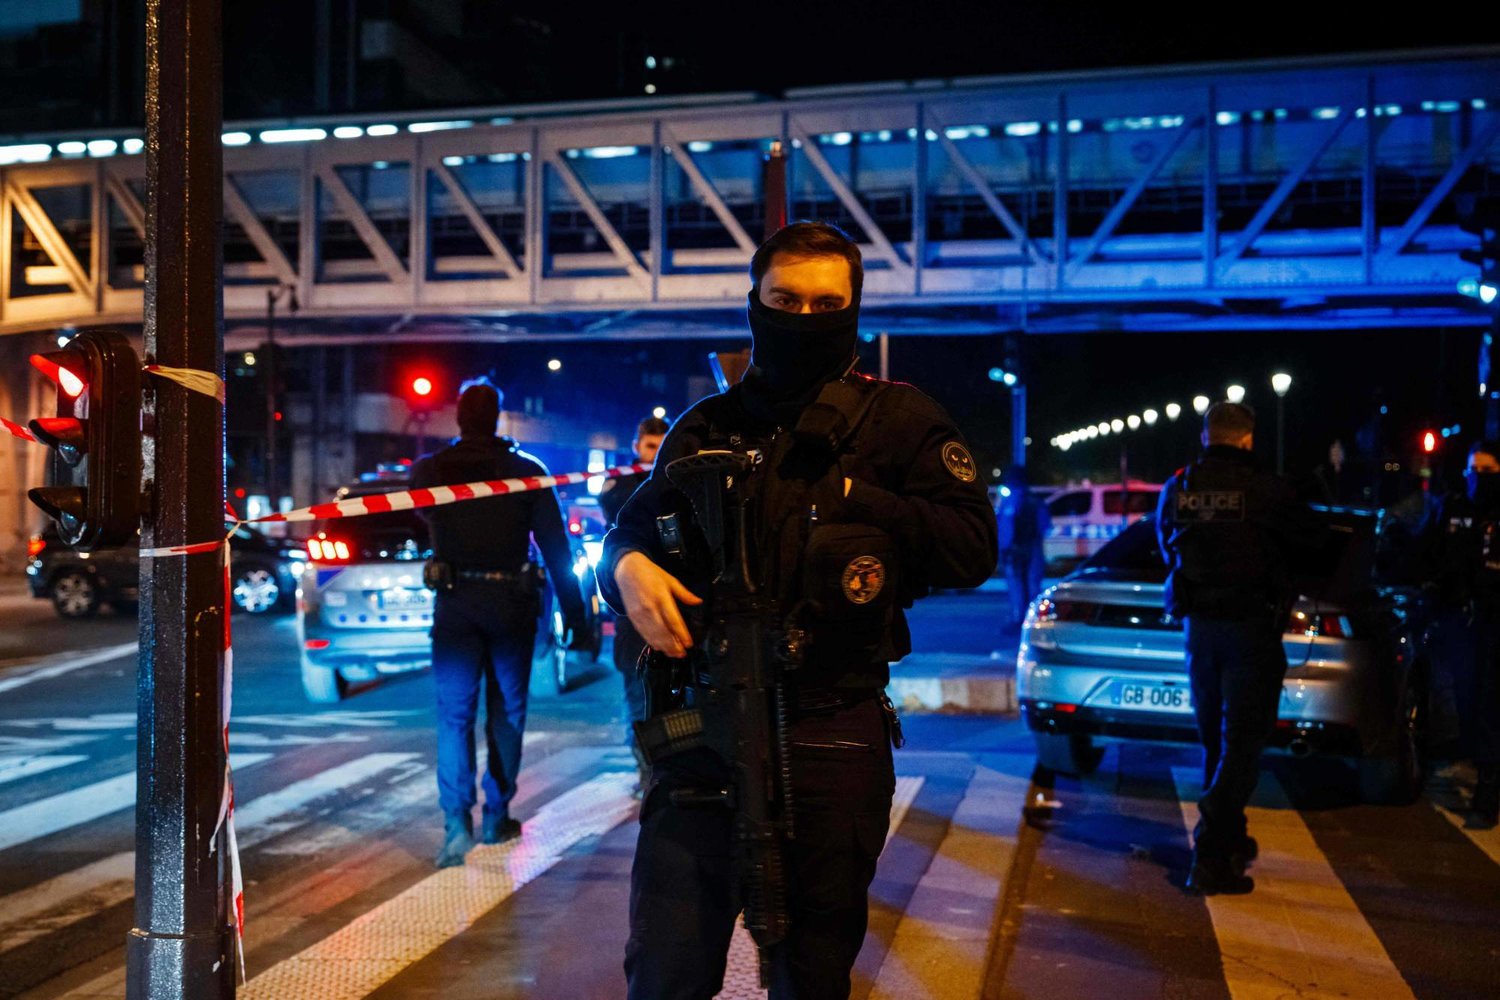 ضابط شرطة يقف حارساً في مكان حادث طعن في باريس السبت الماضي (أ.ف.ب)